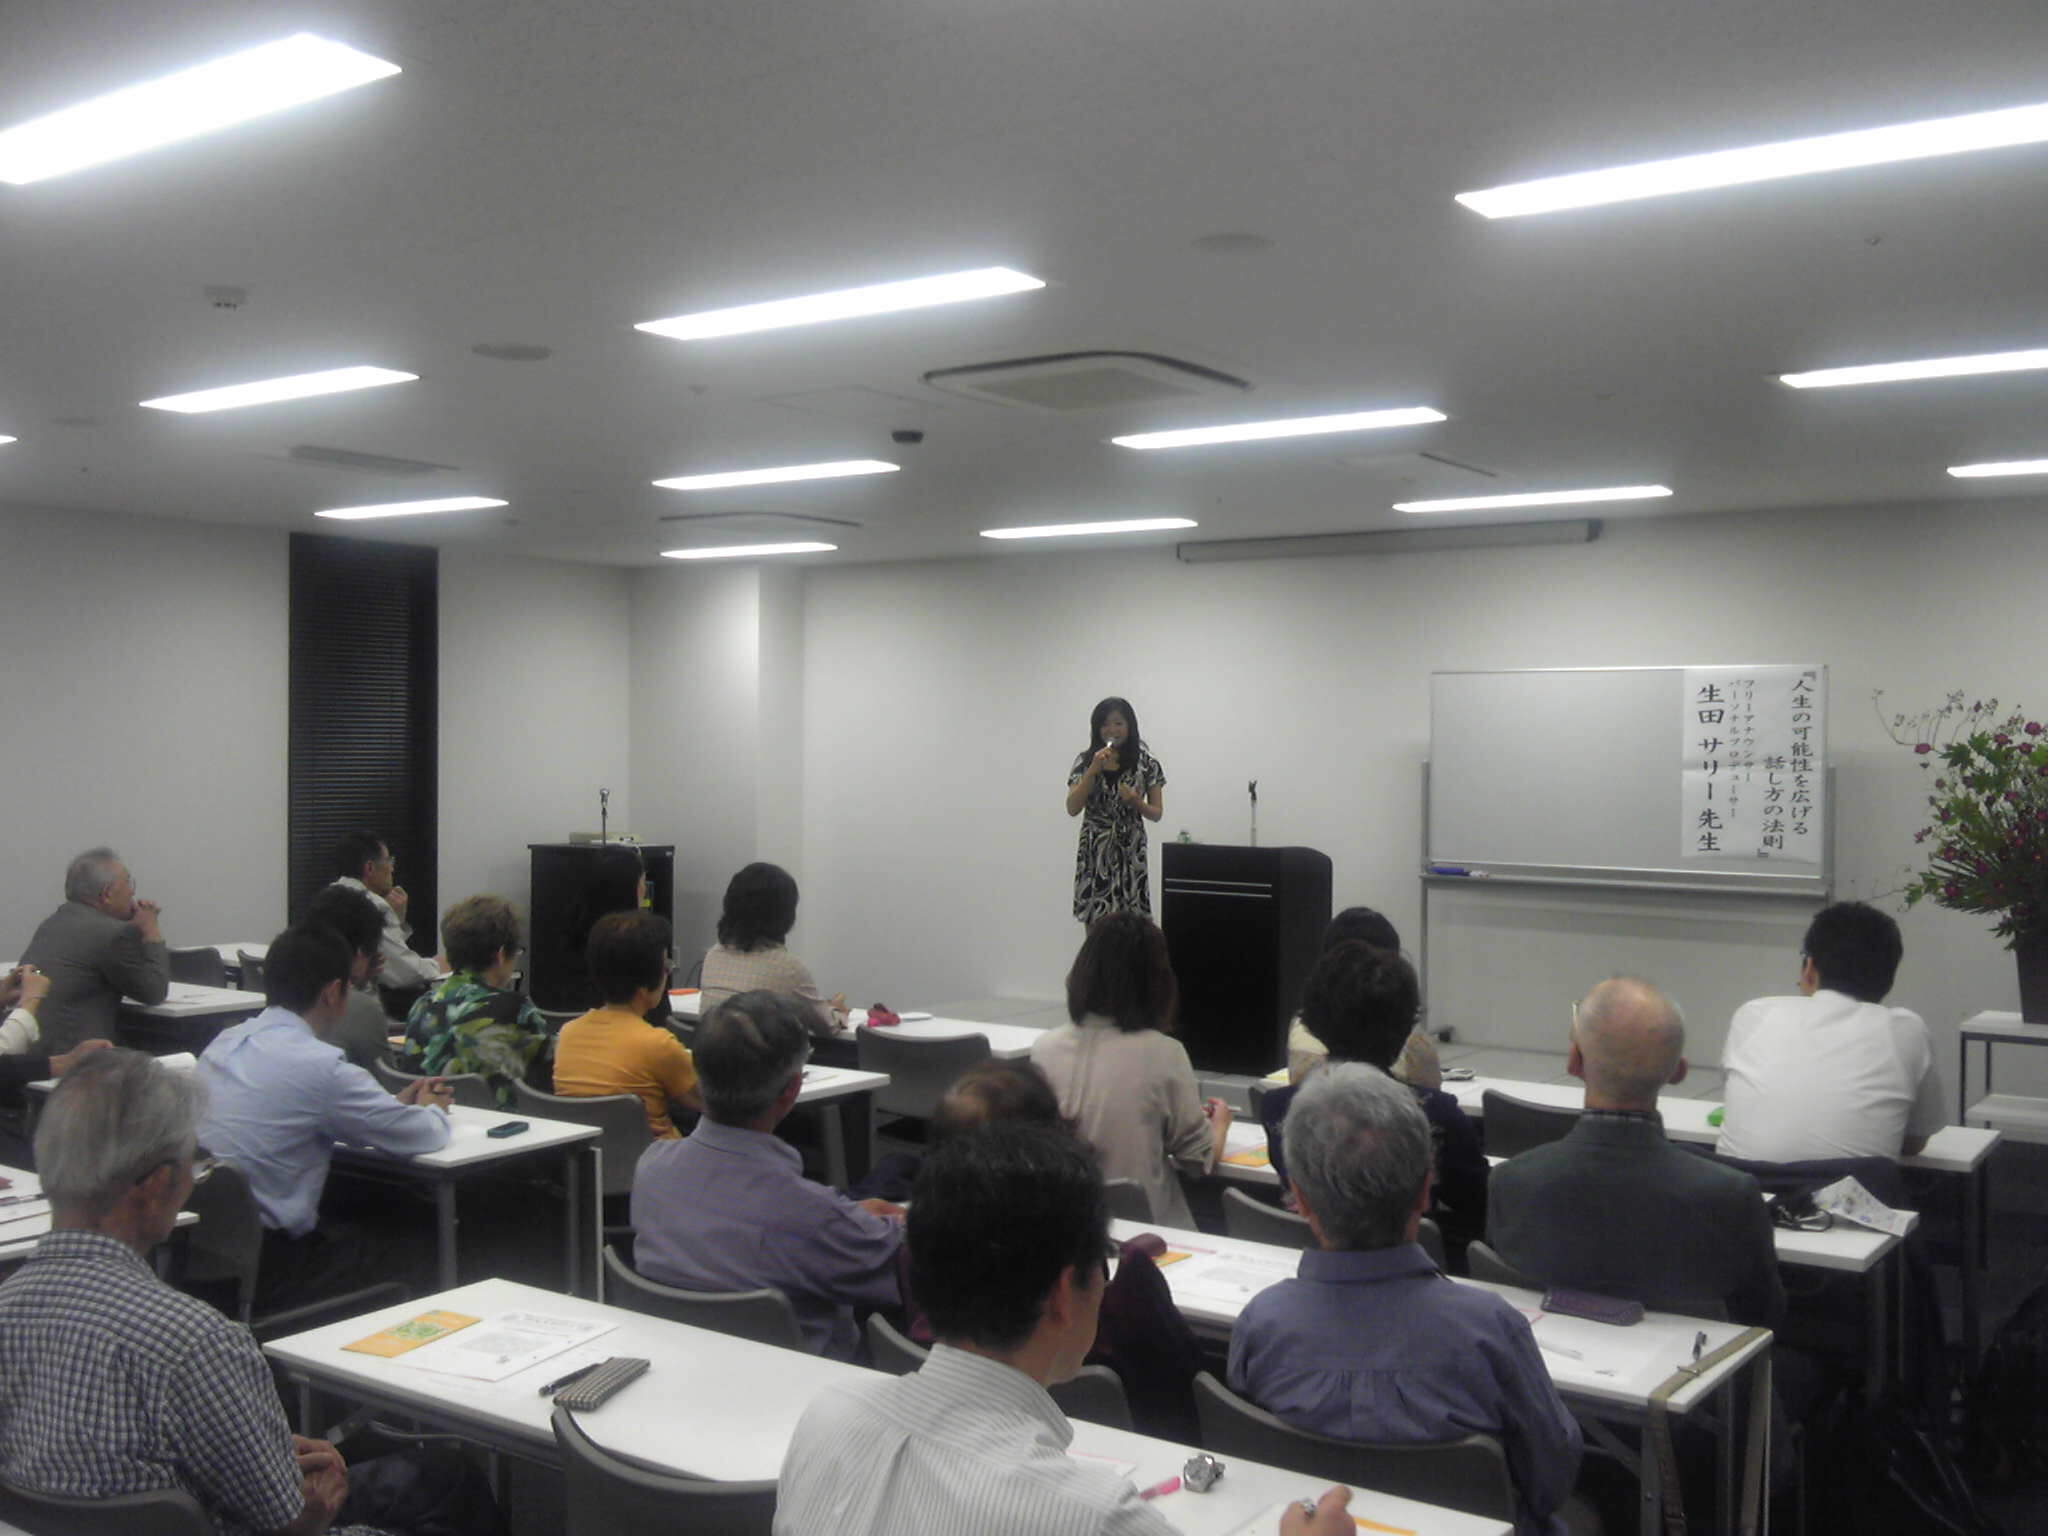 『名古屋市民大学講座』にて講演しました!_e0142585_723793.jpg